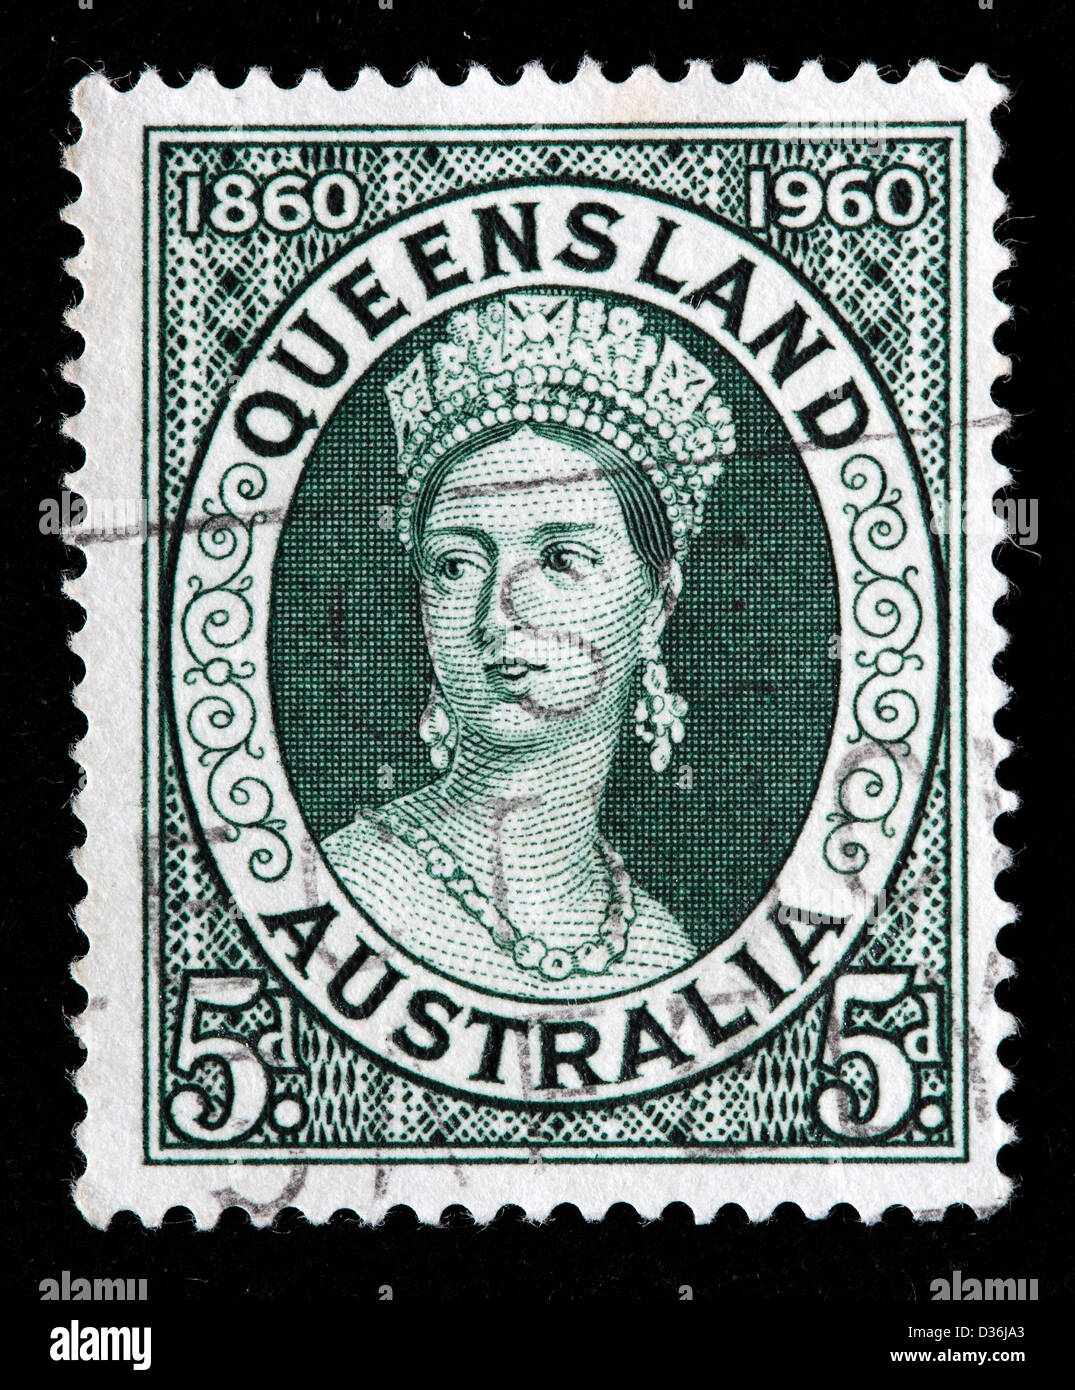 Queen Sie Victoria, Briefmarke, Australien, 1960 Stockfoto